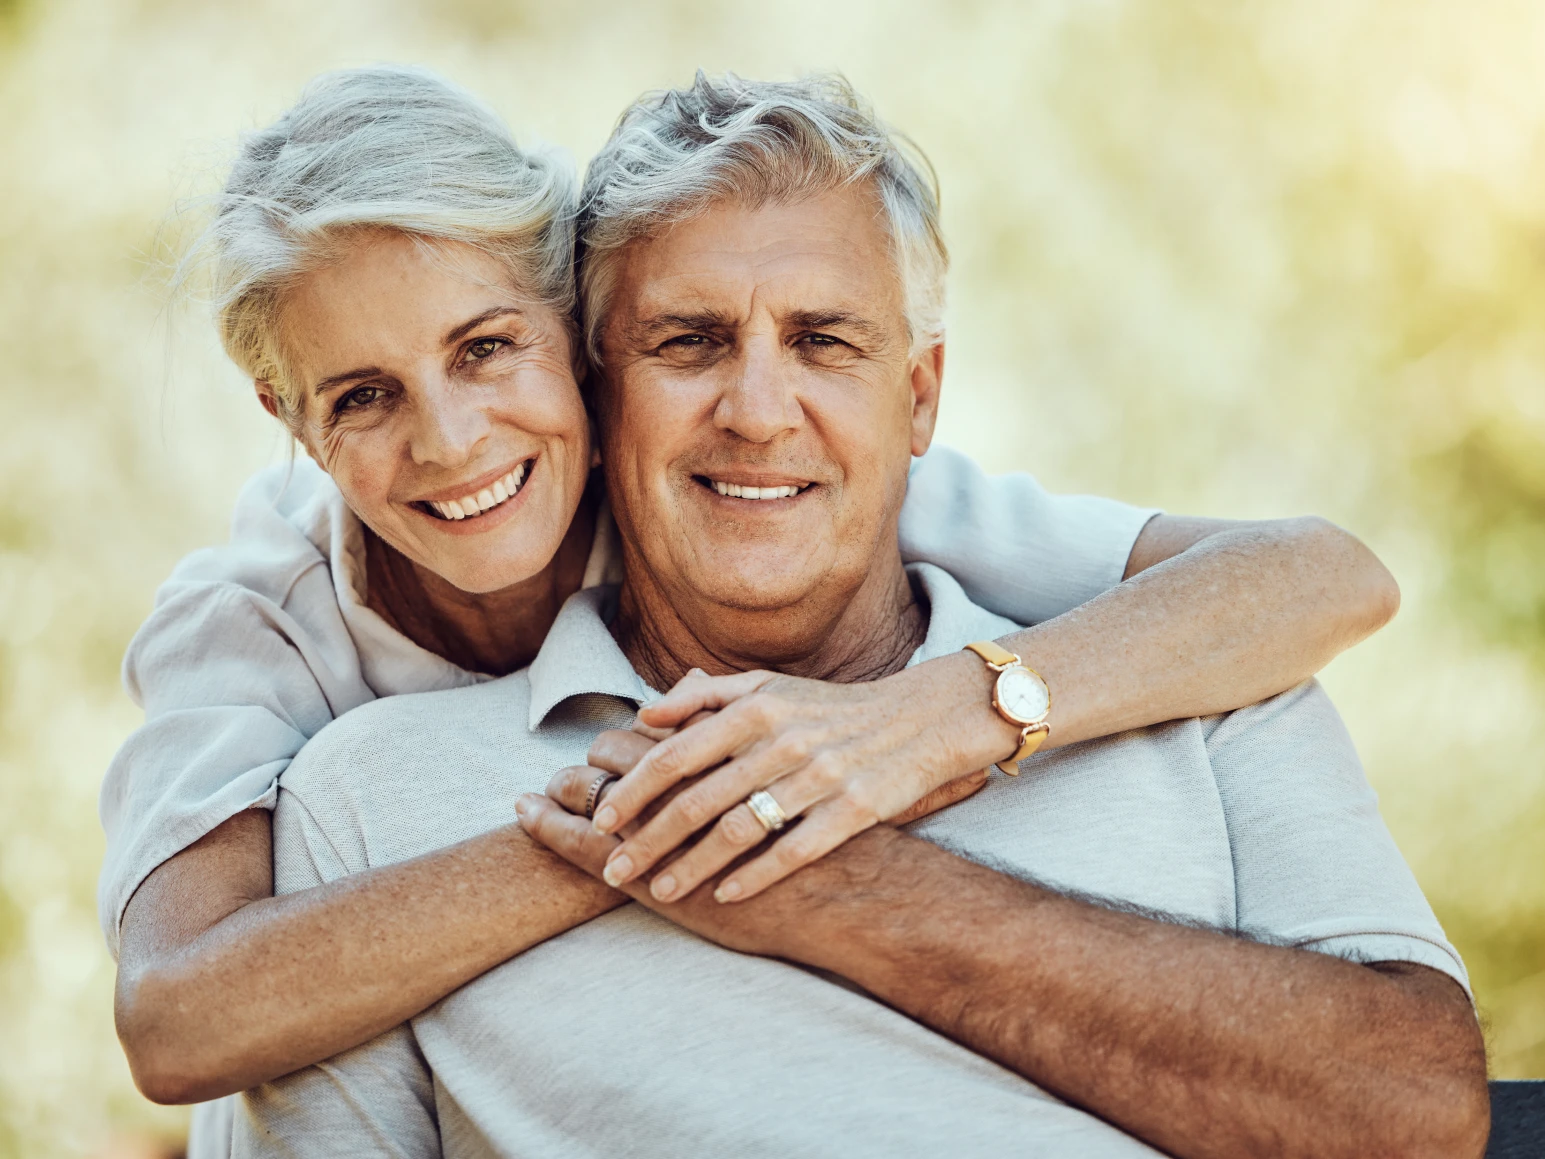 Older couple smiling together after dental implants in Baltimore